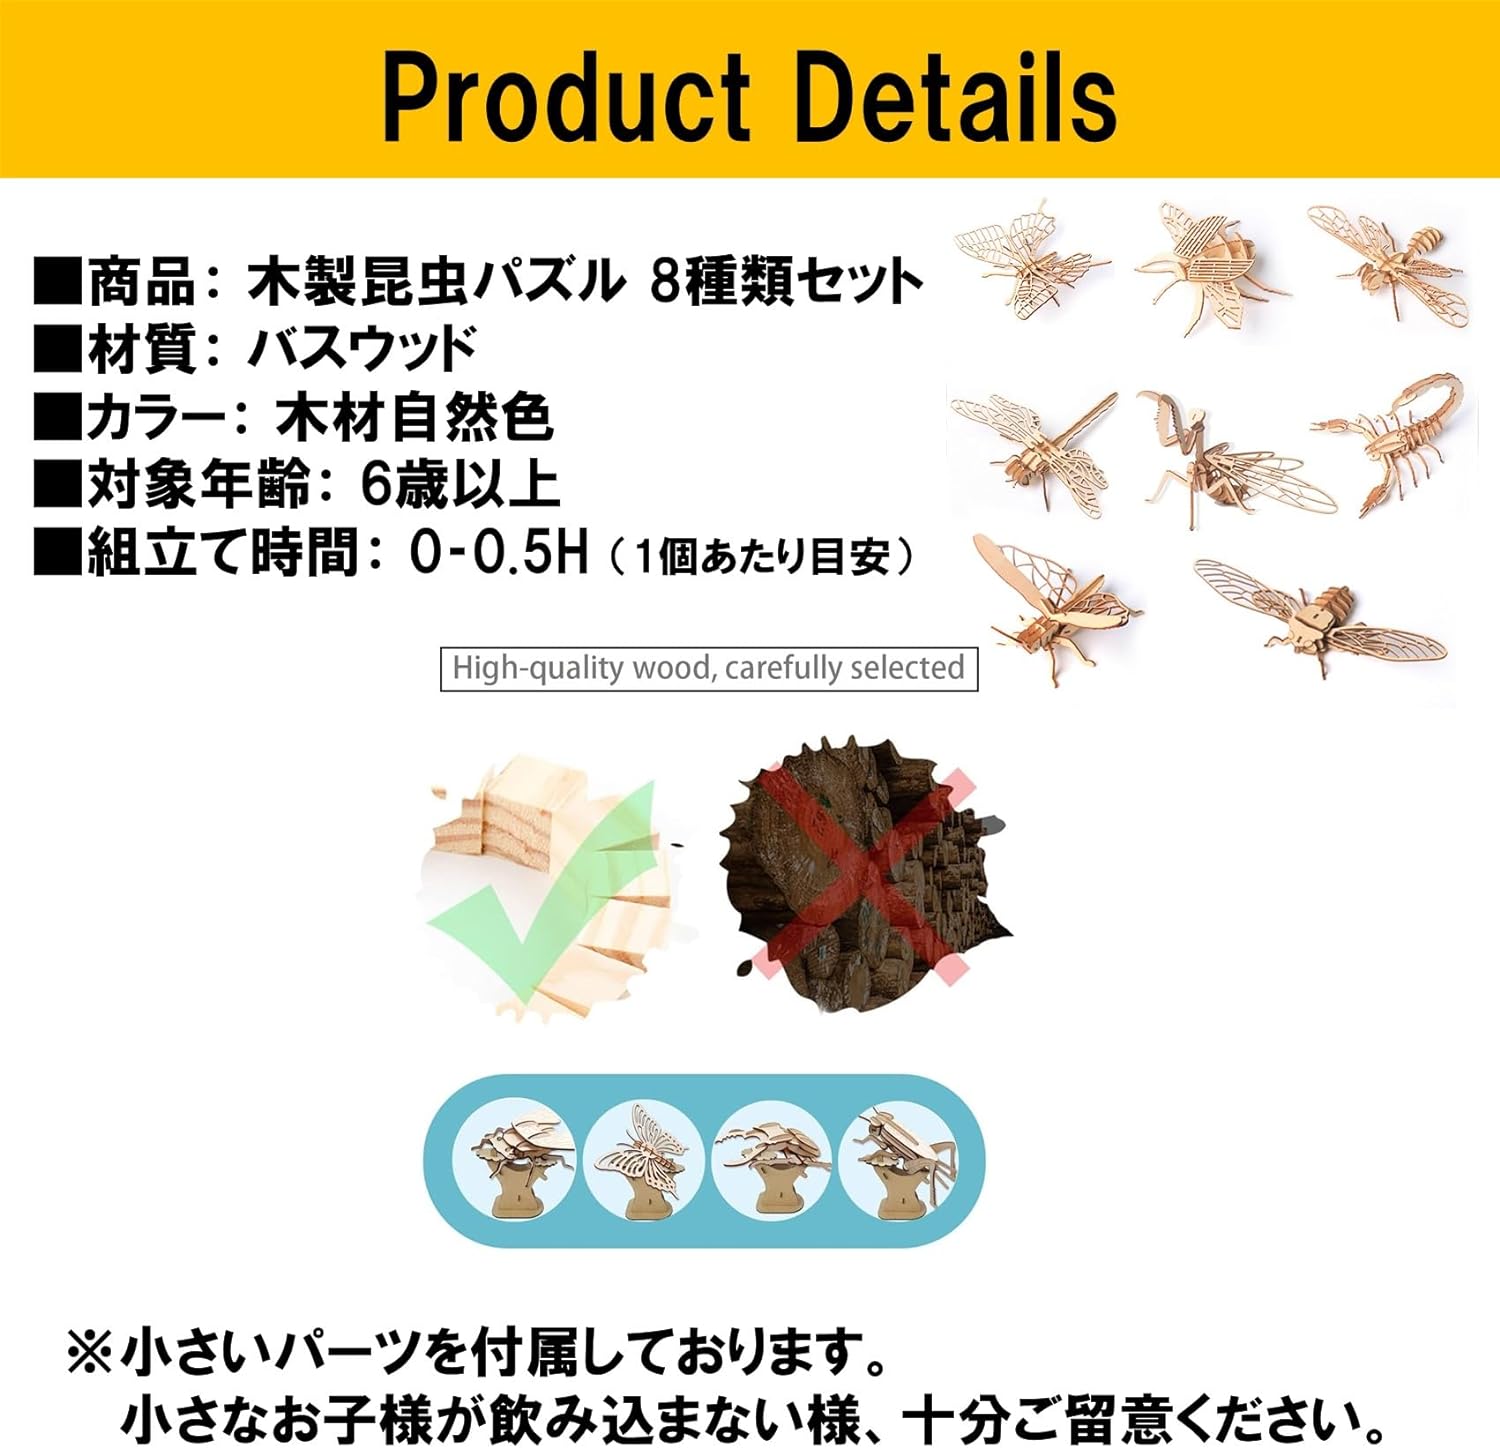 NOELAMOUR 木製立体パズル 昆虫 3D パズル 子供 おもちゃ 知育玩具 模型 工作 DIY (8種類セット) | クラシックス